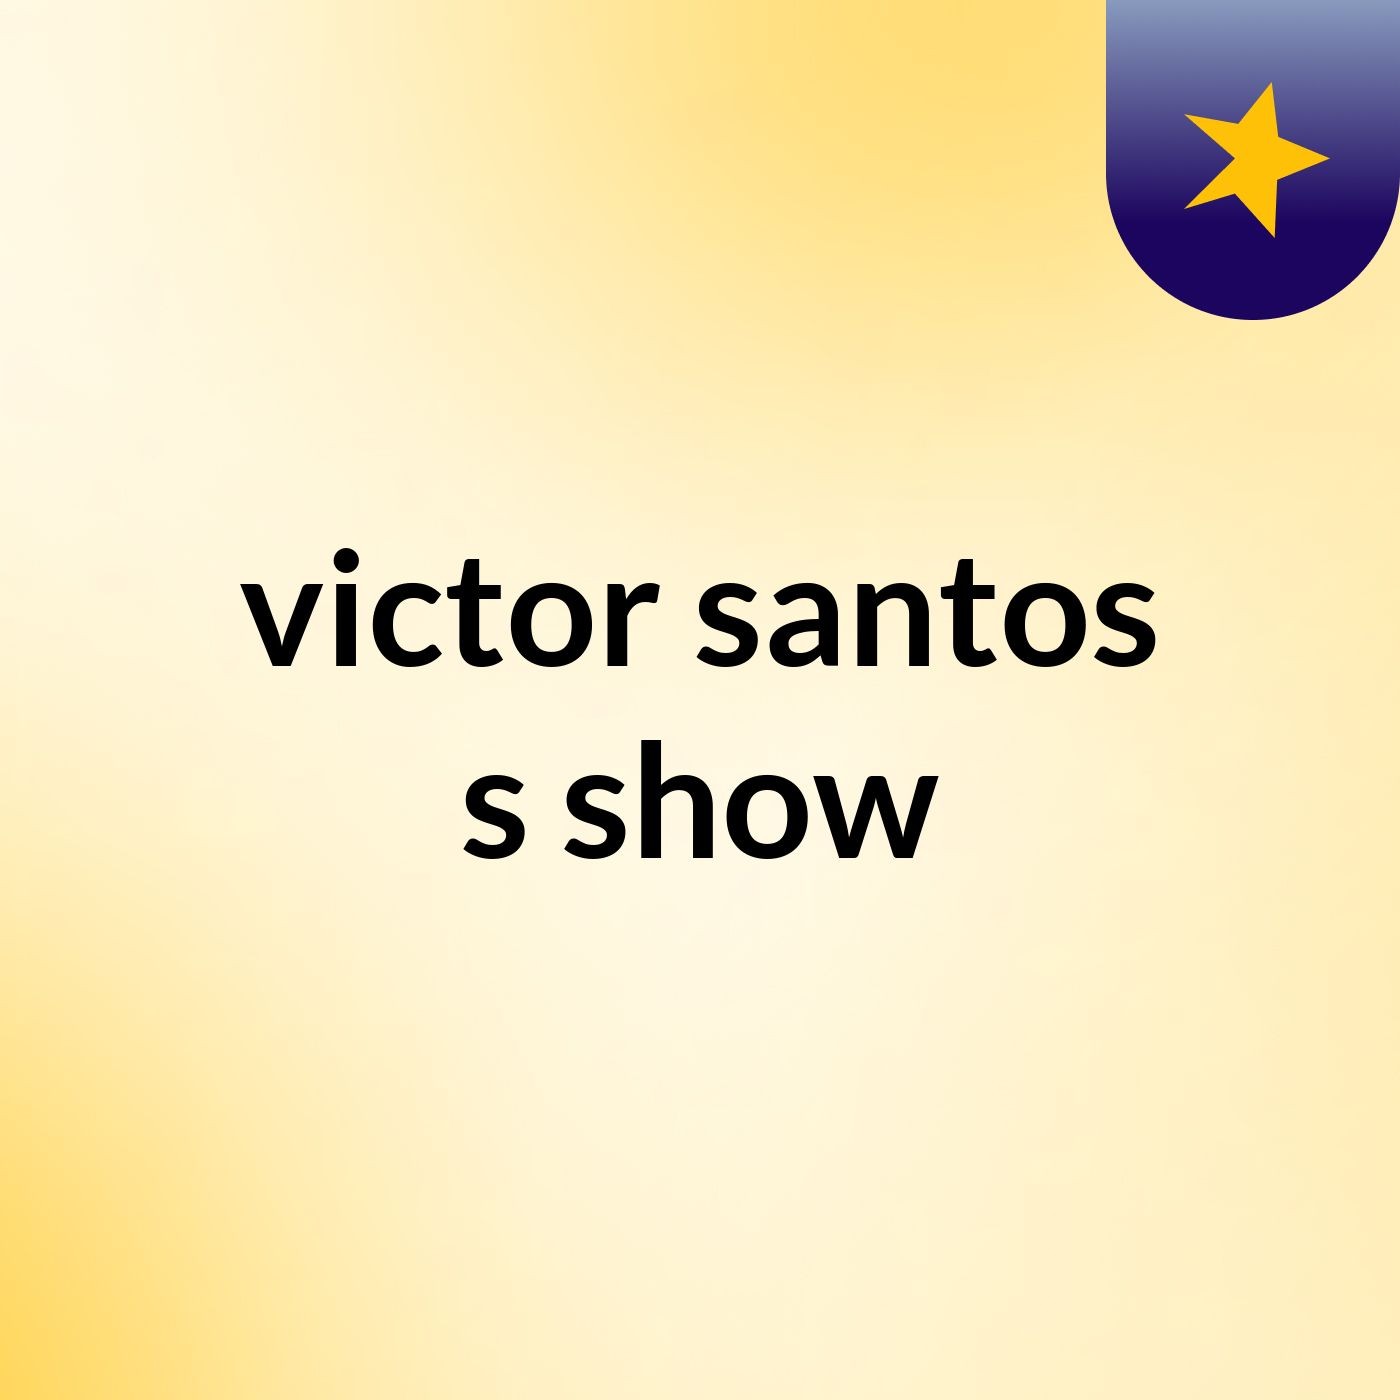 victor santos's show